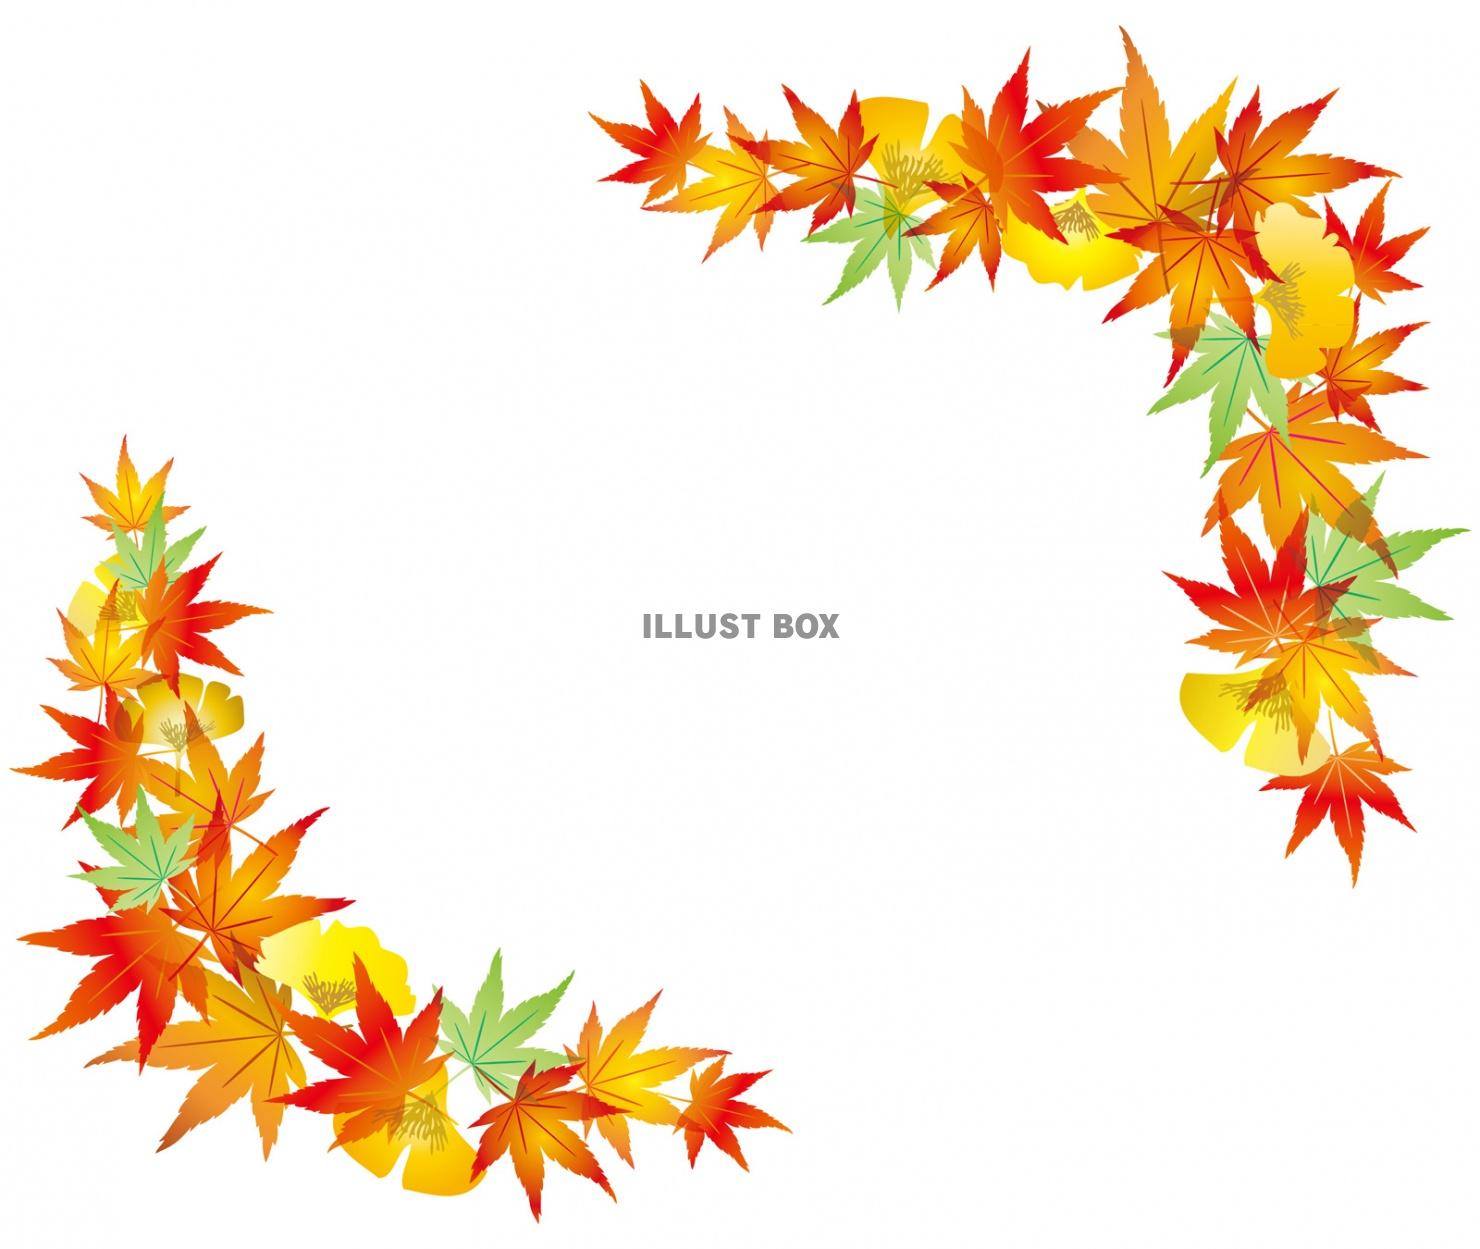 無料イラスト 紅葉おしゃれフレーム枠もみじ枠秋飾りシンプル葉飾り枠